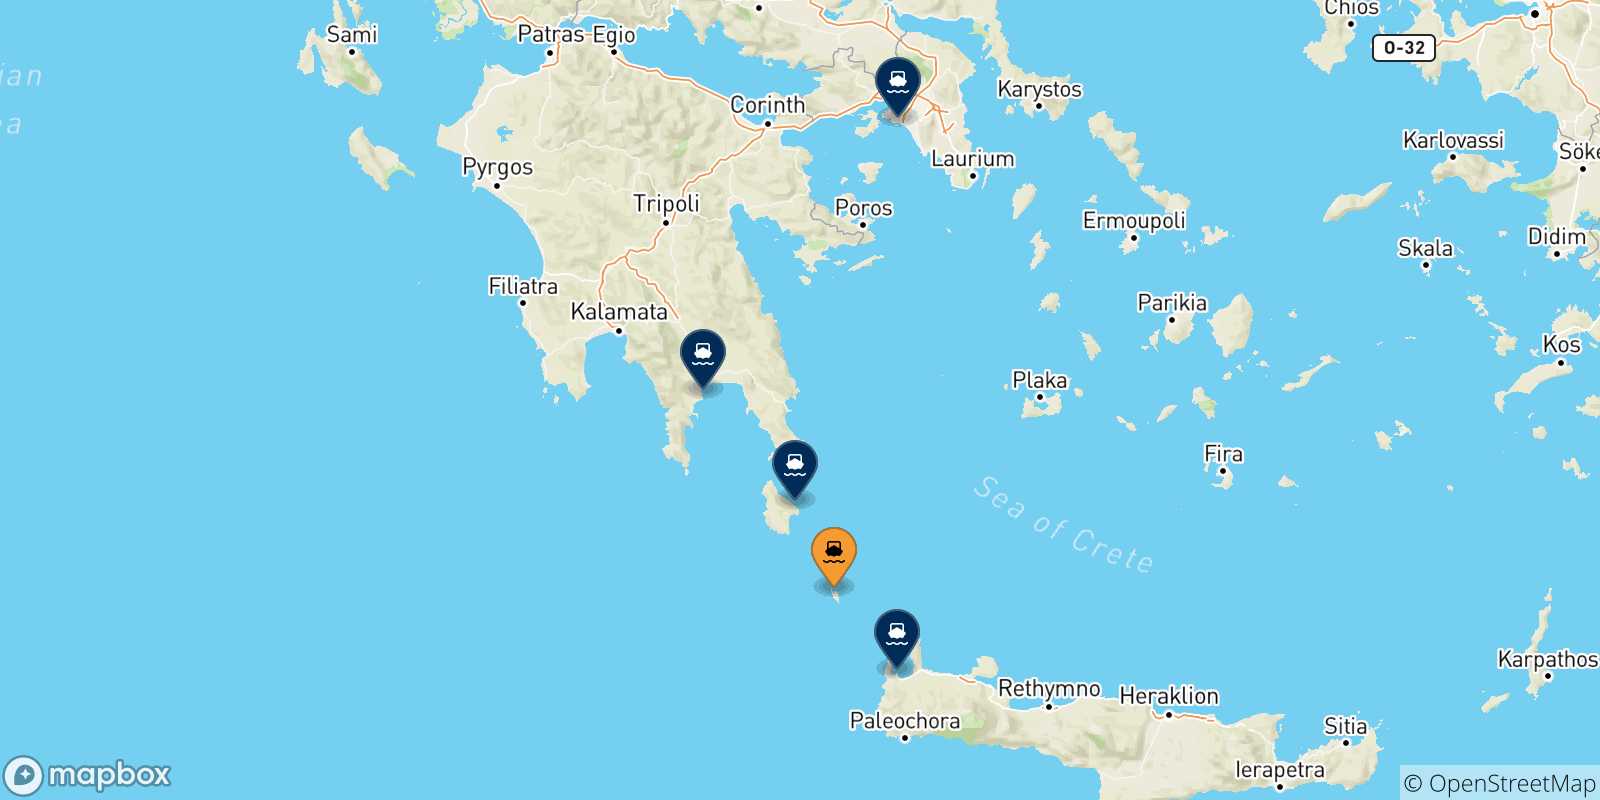 Mappa delle possibili rotte tra Antikythira e la Grecia